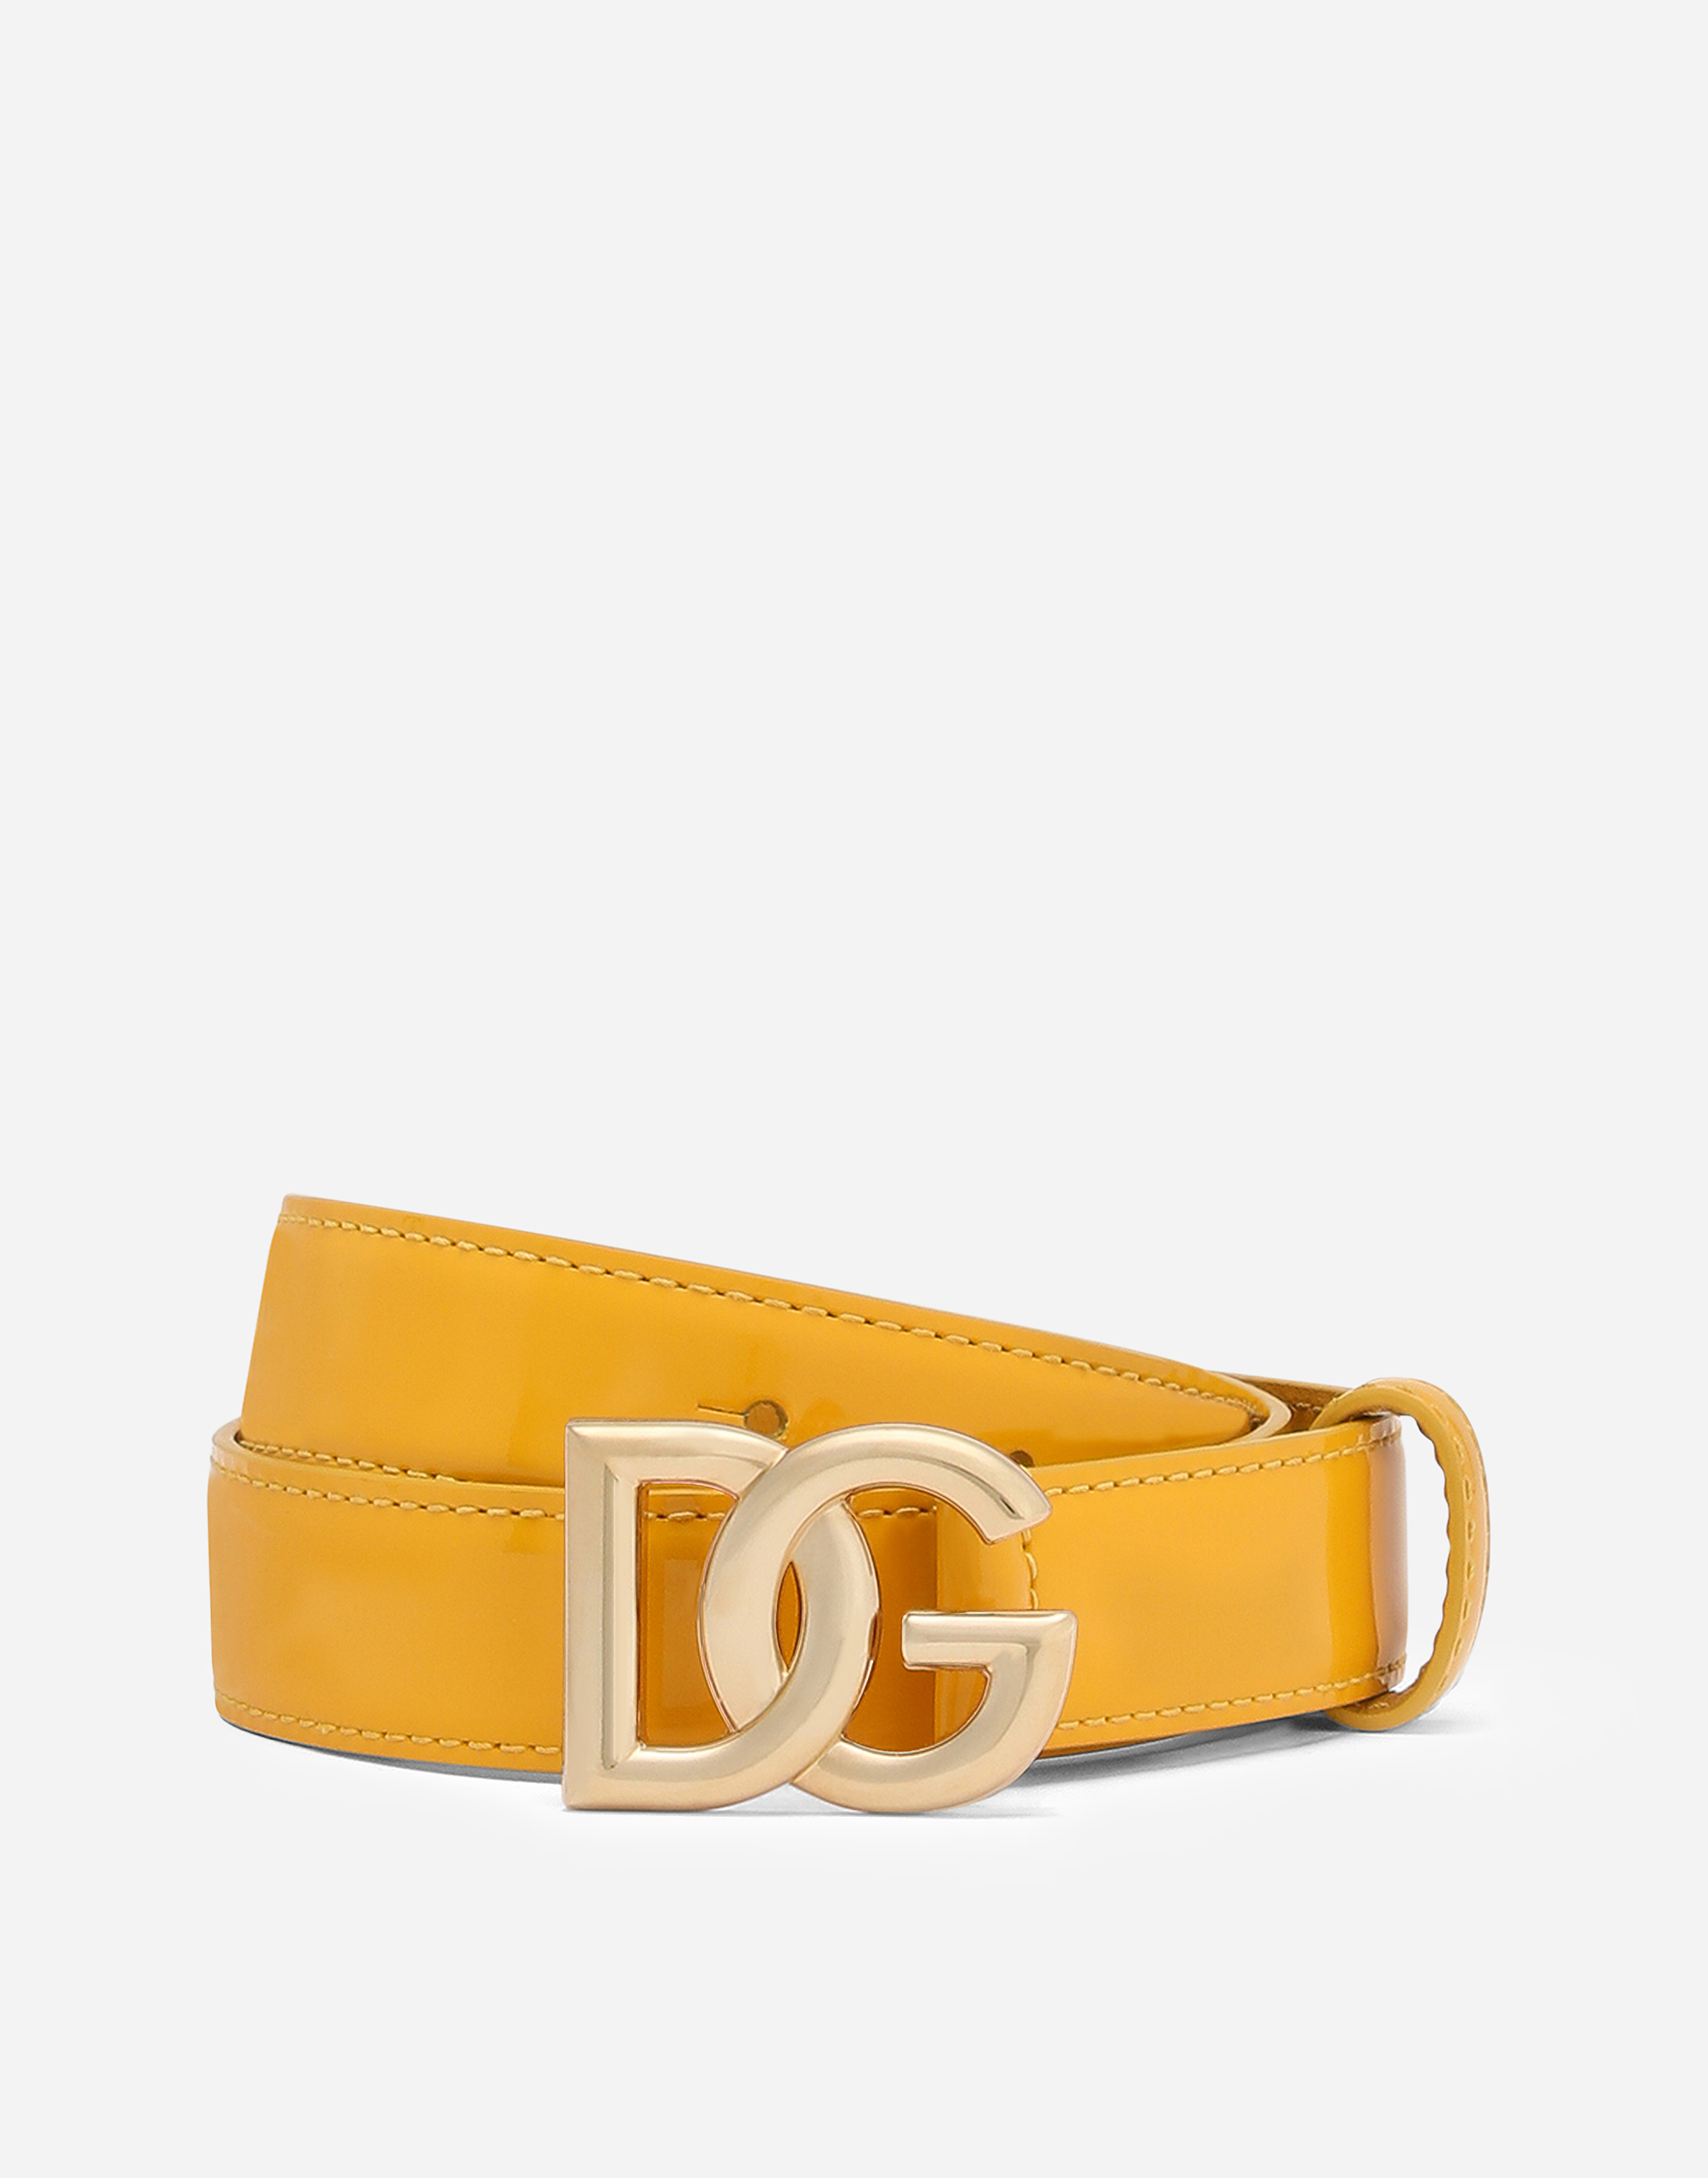 DG logo belt in Yellow